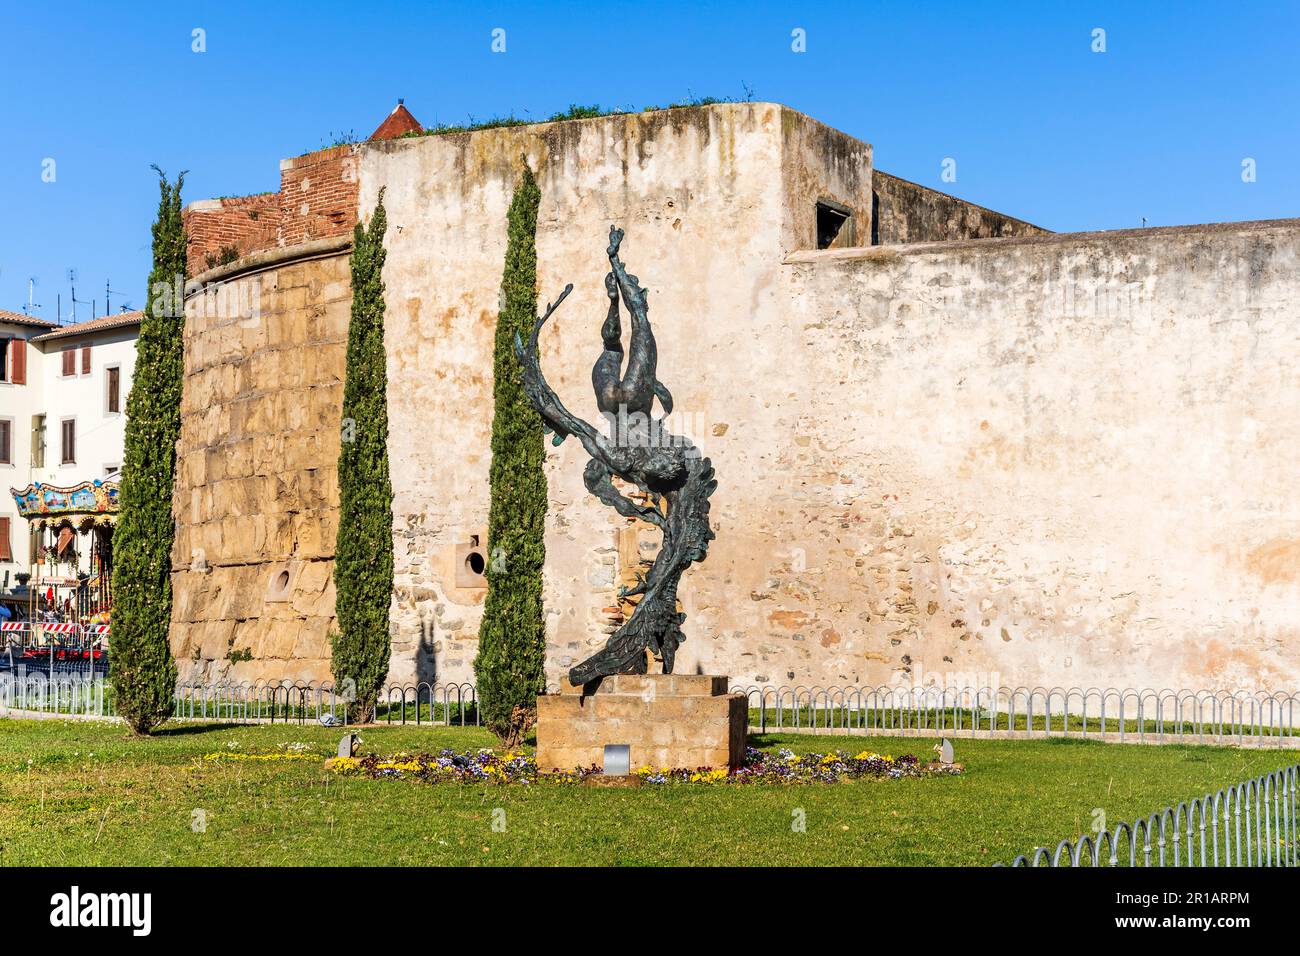 Piazza Thomas Edison, avec la statue de 'Icarus' et les murs médiévaux de Rivellino, une fortification militaire dans le centre-ville de Piombino, Italie Banque D'Images